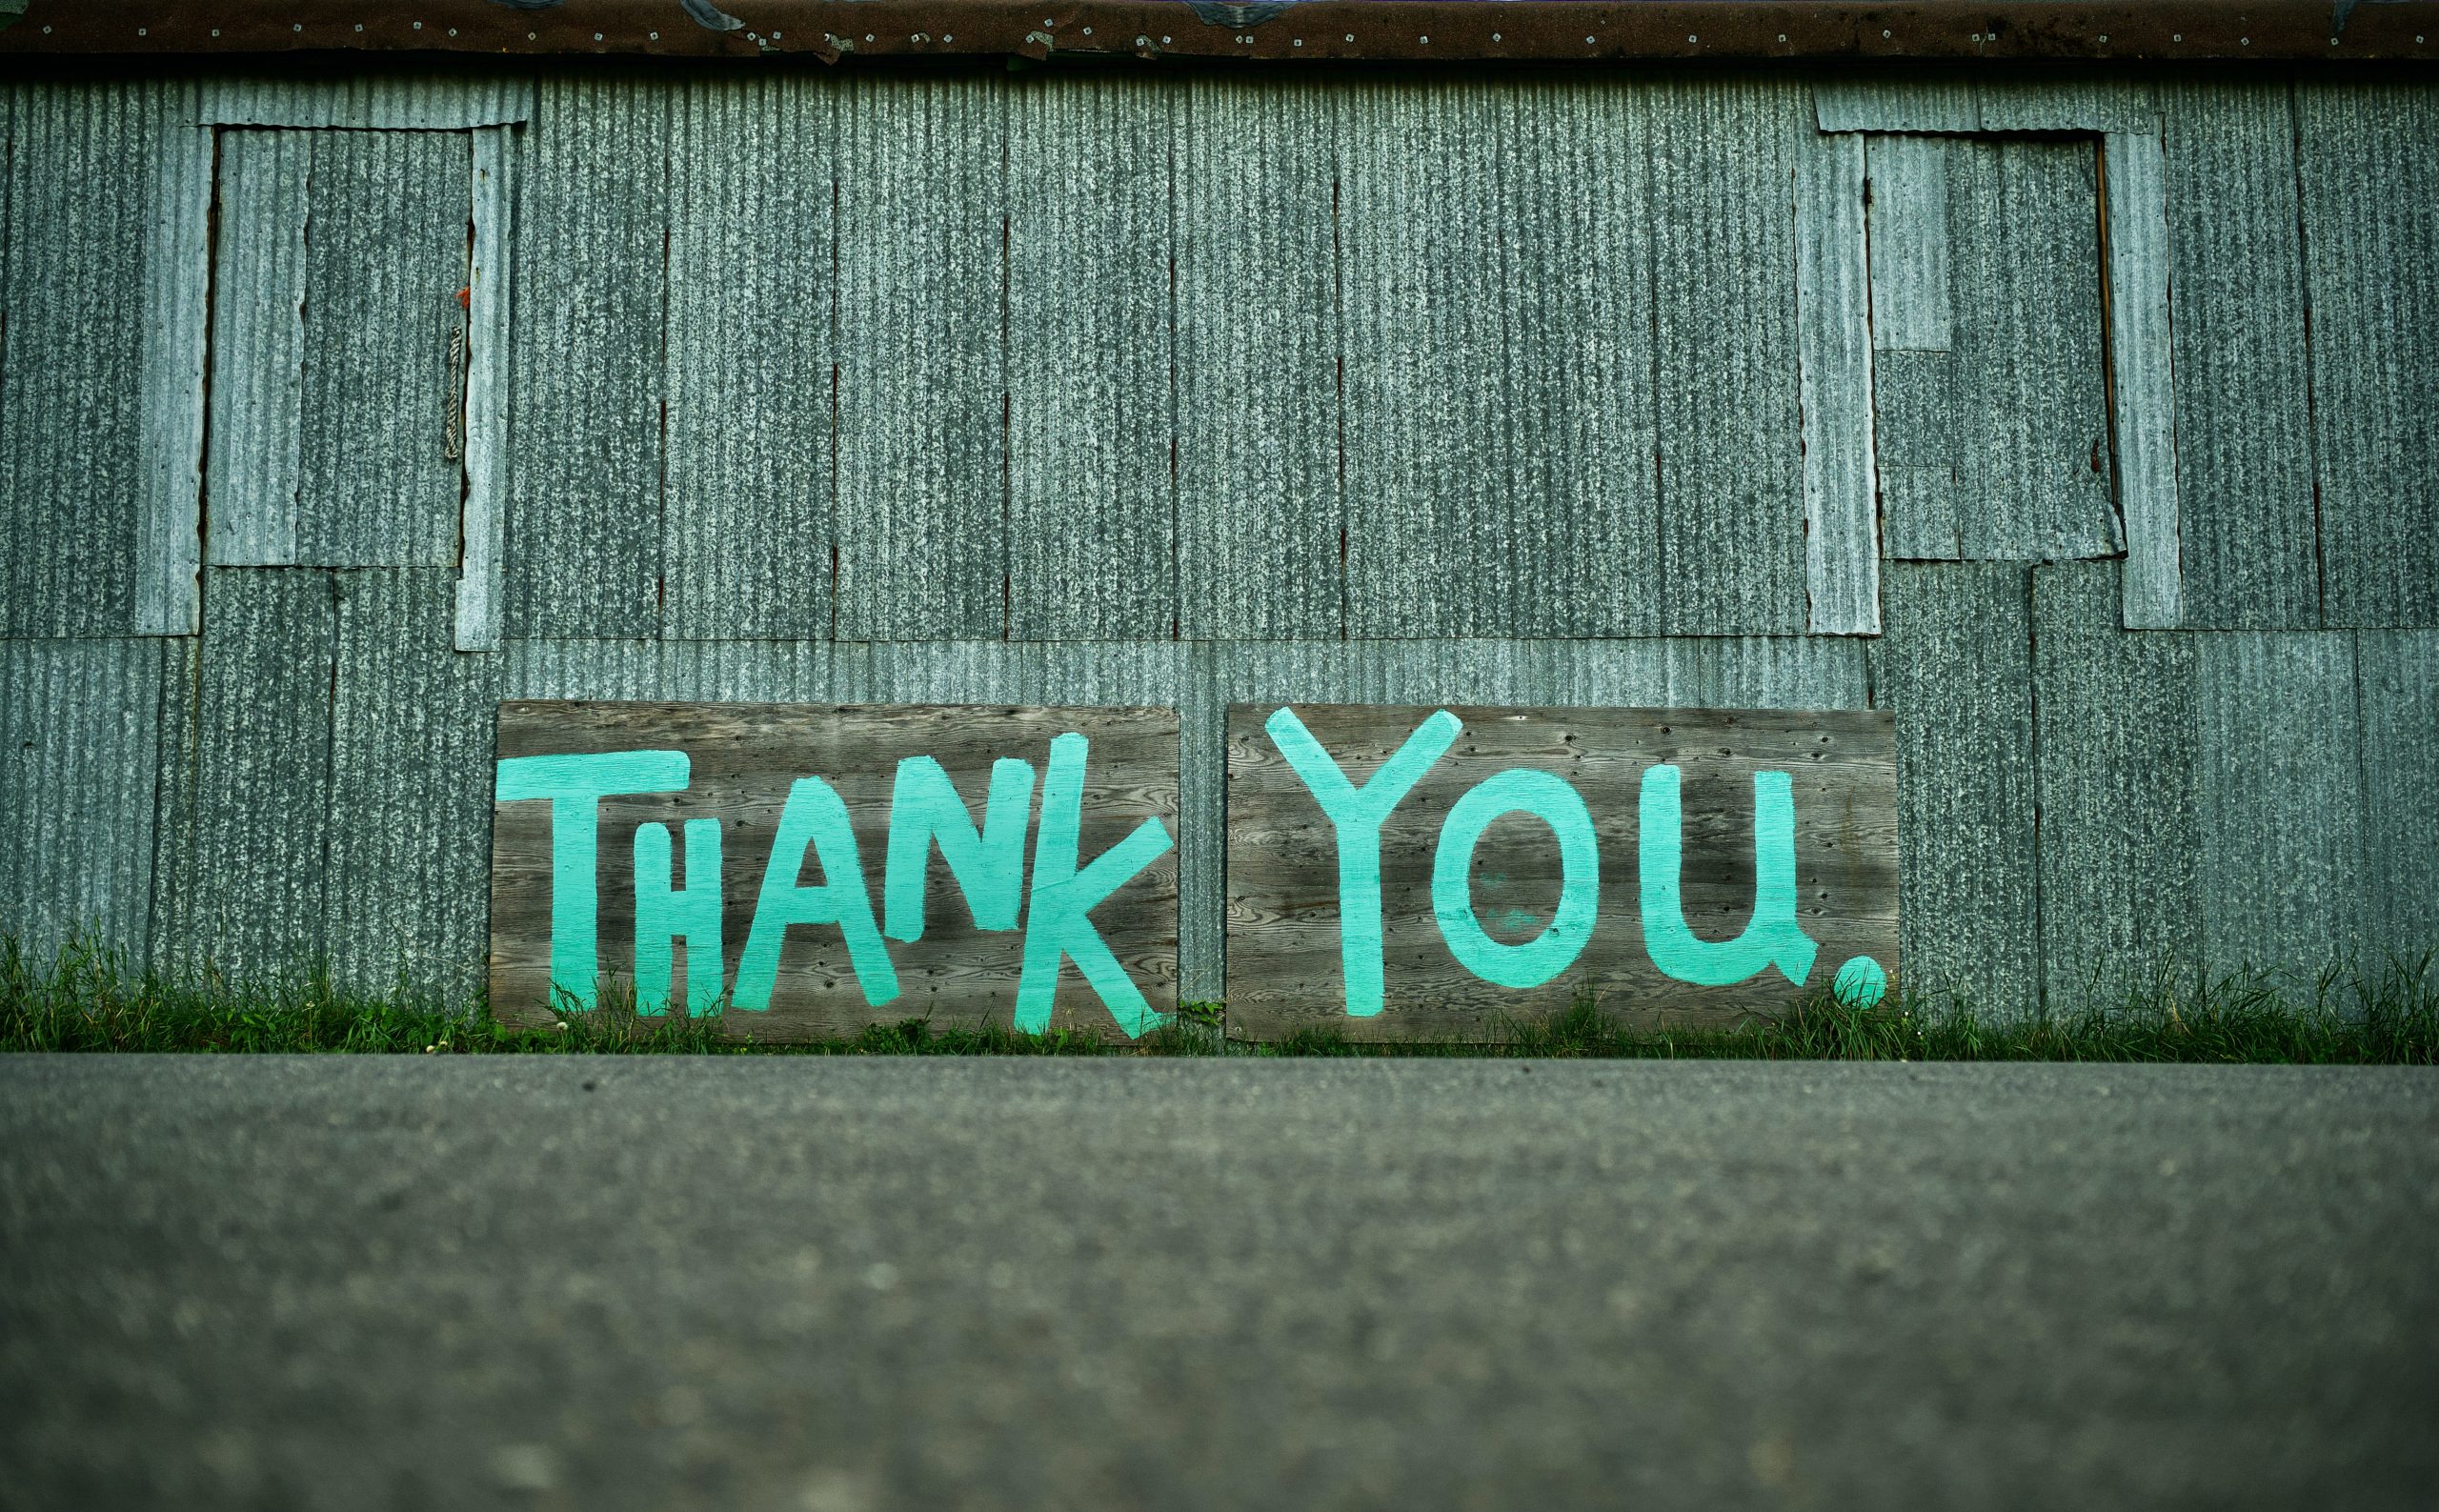 Painted graffiti "Thank You."